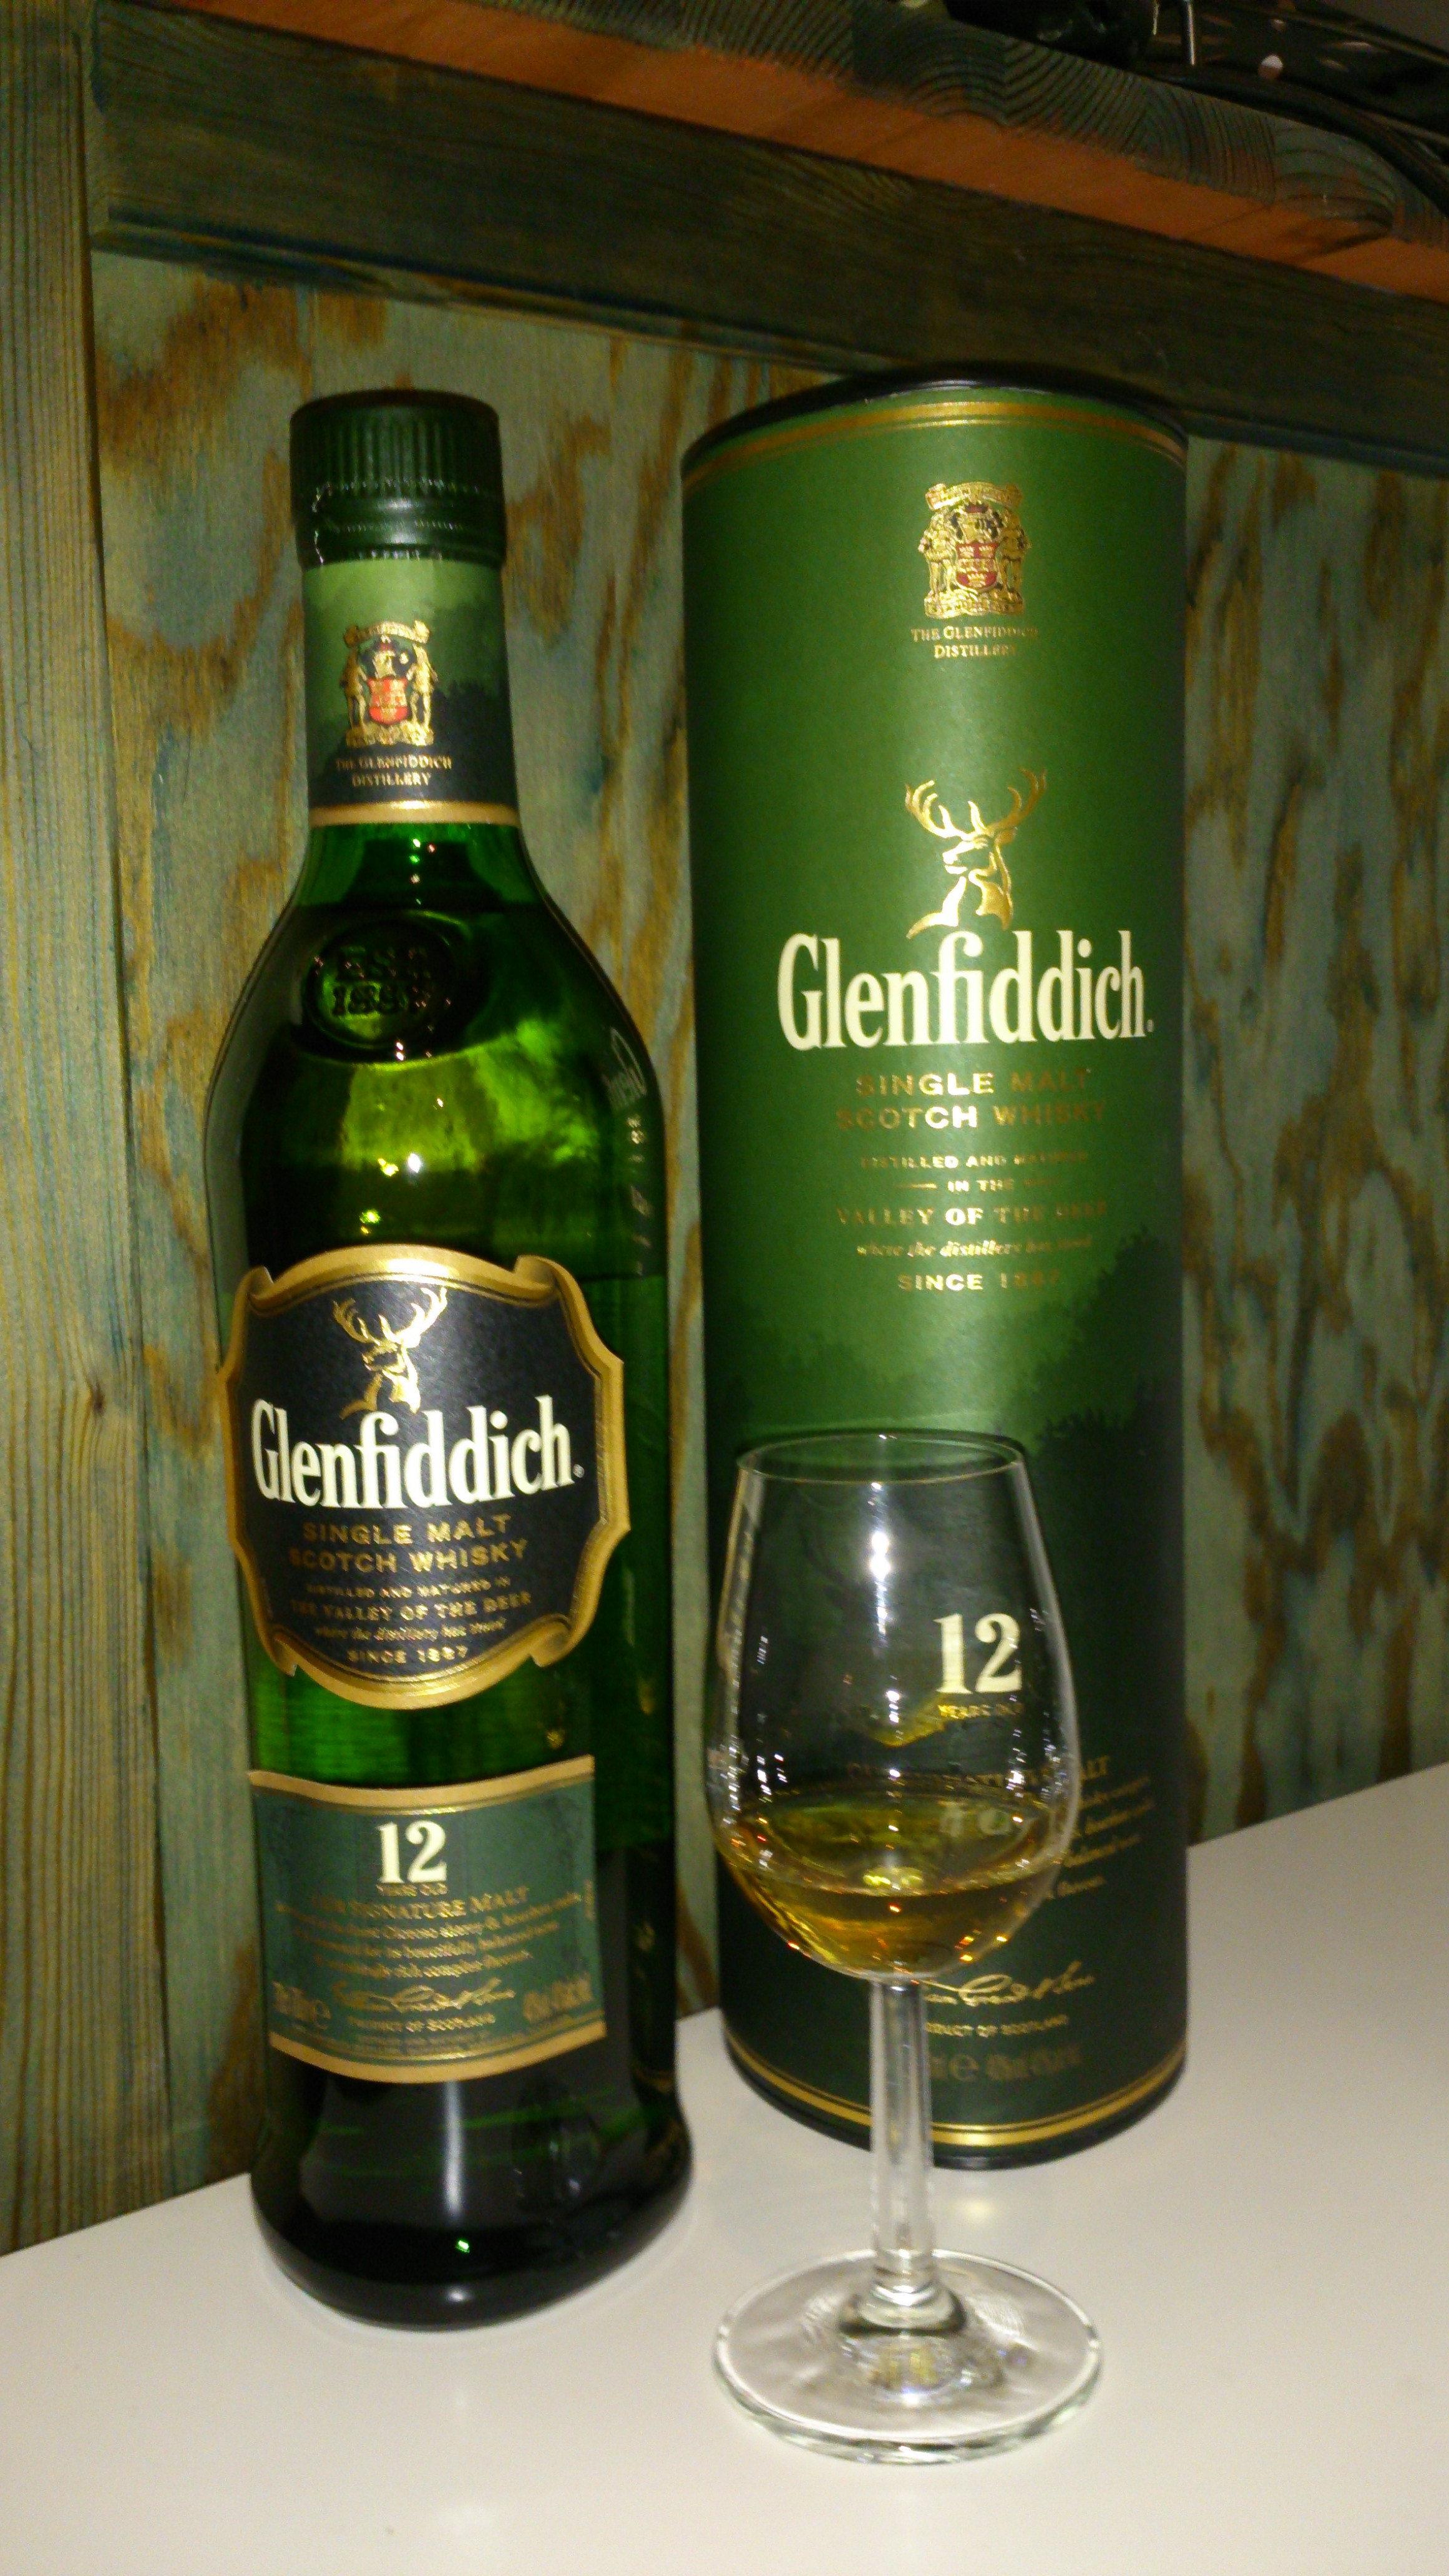 Wir verkosten Standards: Glenfiddich 12 Jahre